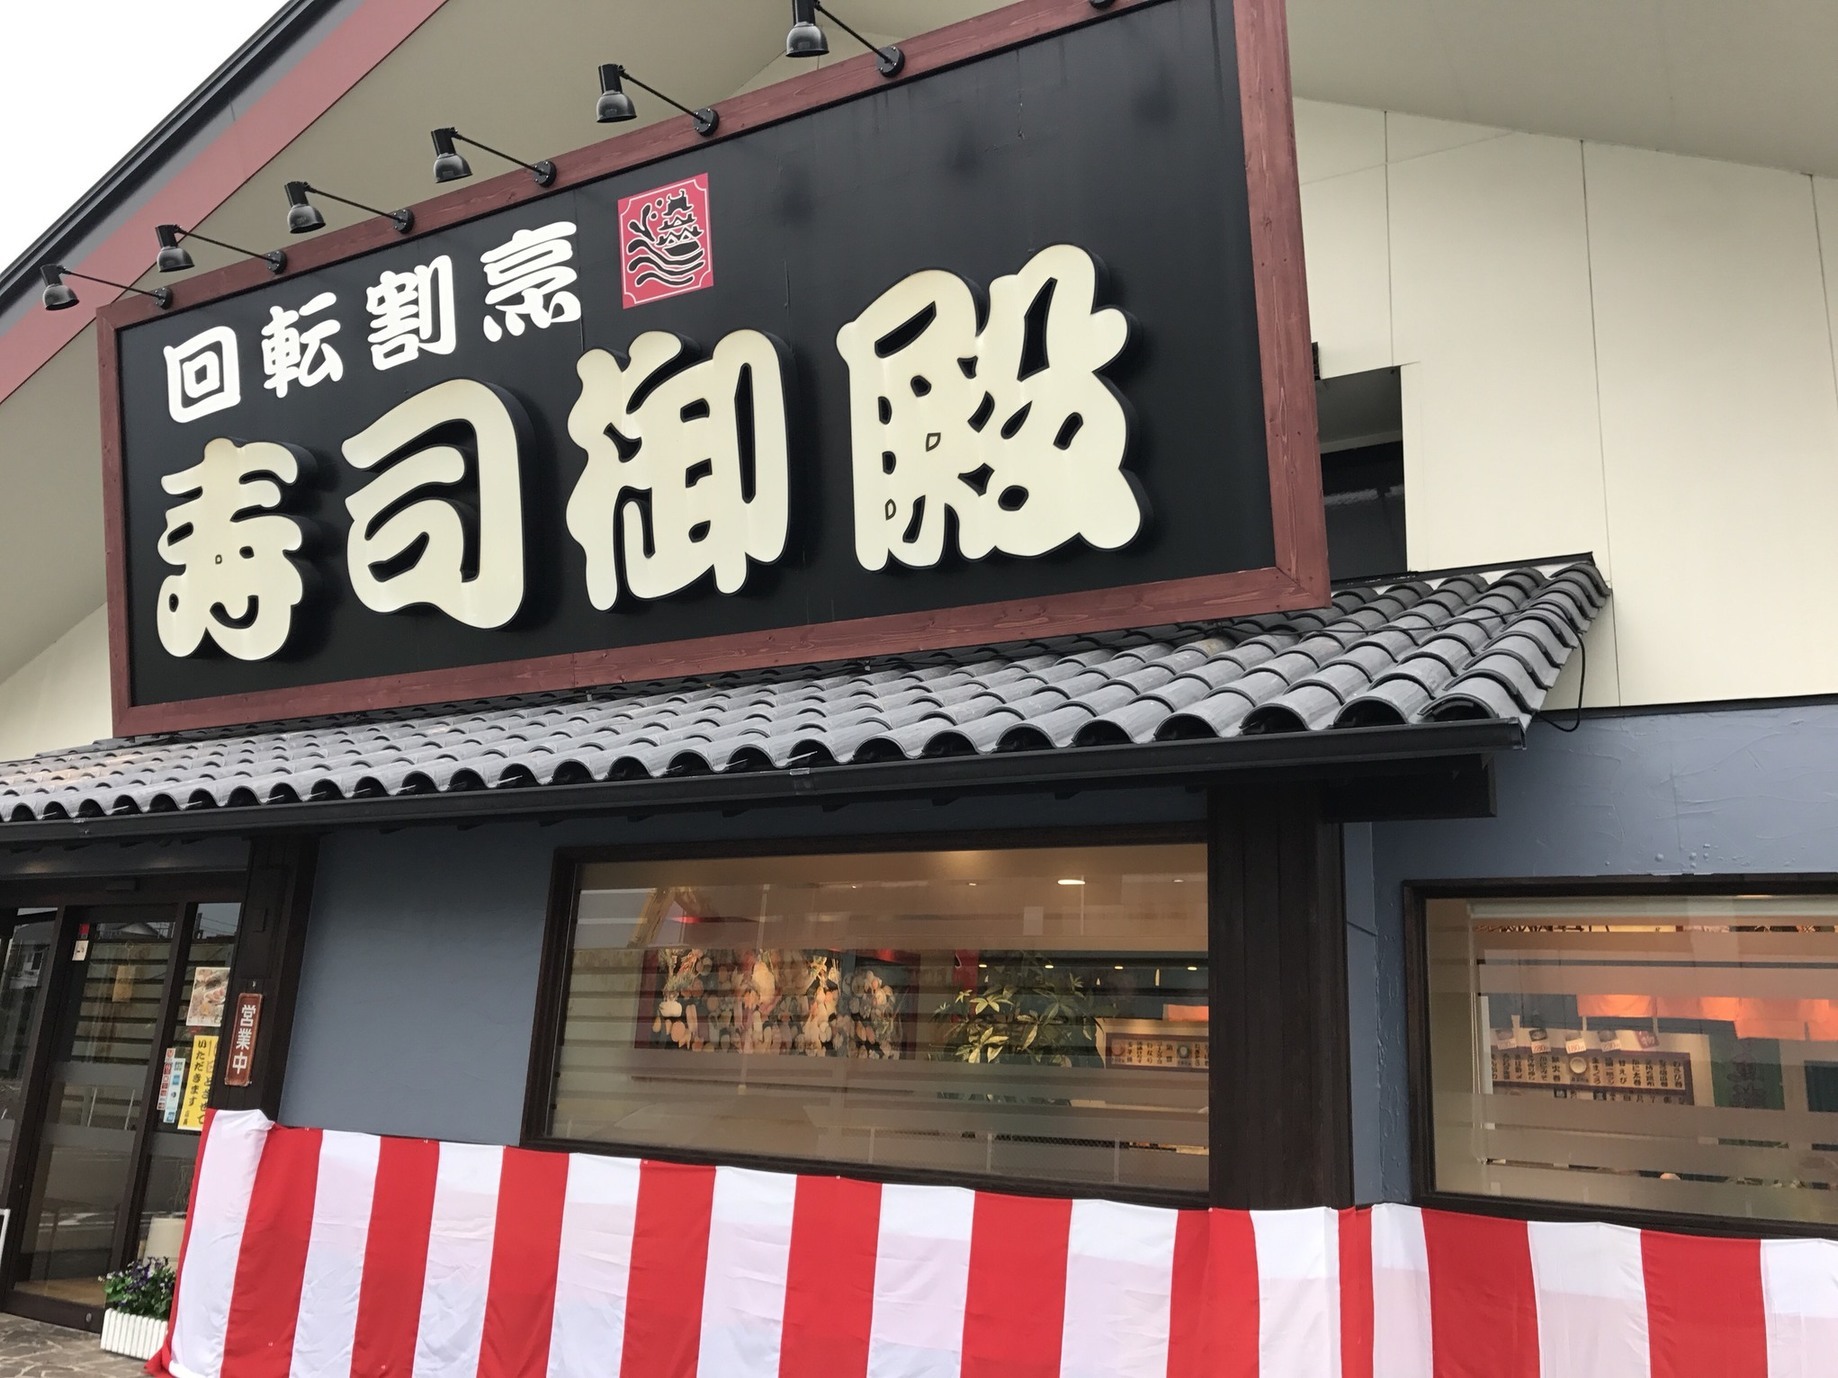 名古屋の美味しい回転寿司top21 コスパ抜群 ハイレベルな人気店ぞろい Tabiyori どんな時も旅日和に